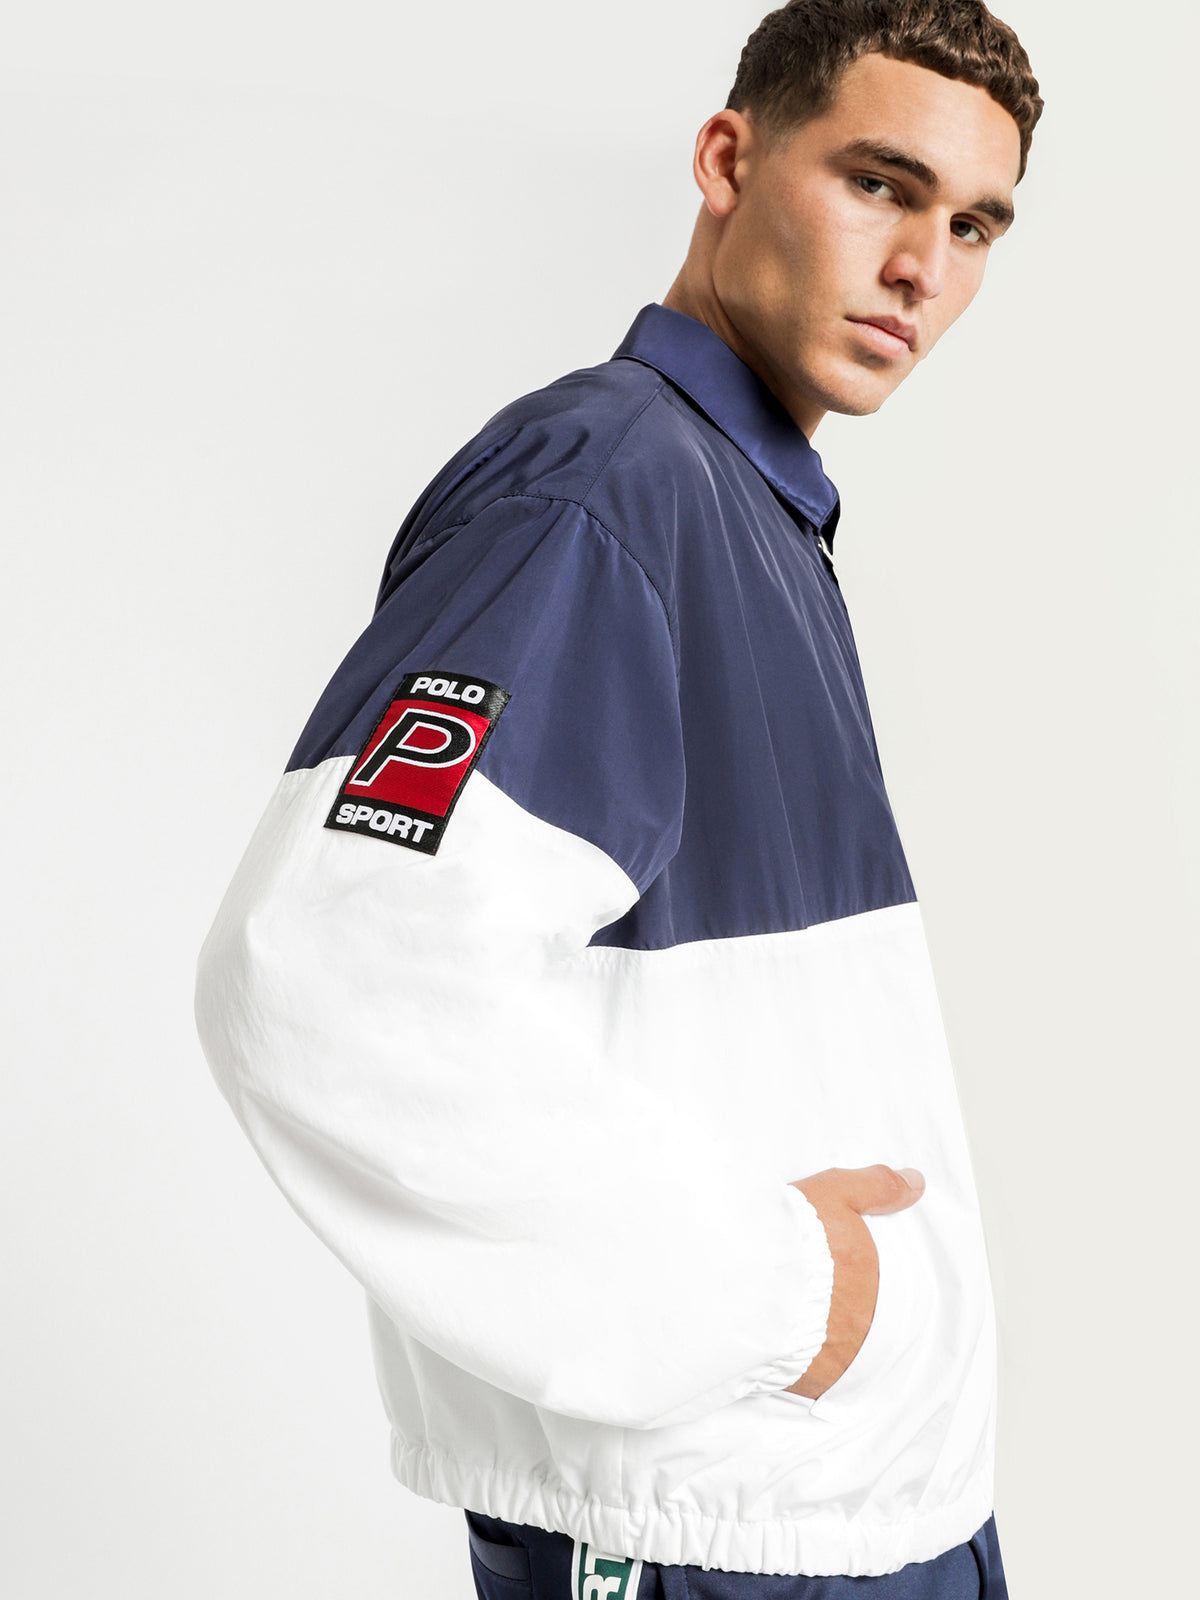 Polo Sport Logo Windbreaker Jacket in Navy & White - Glue Store